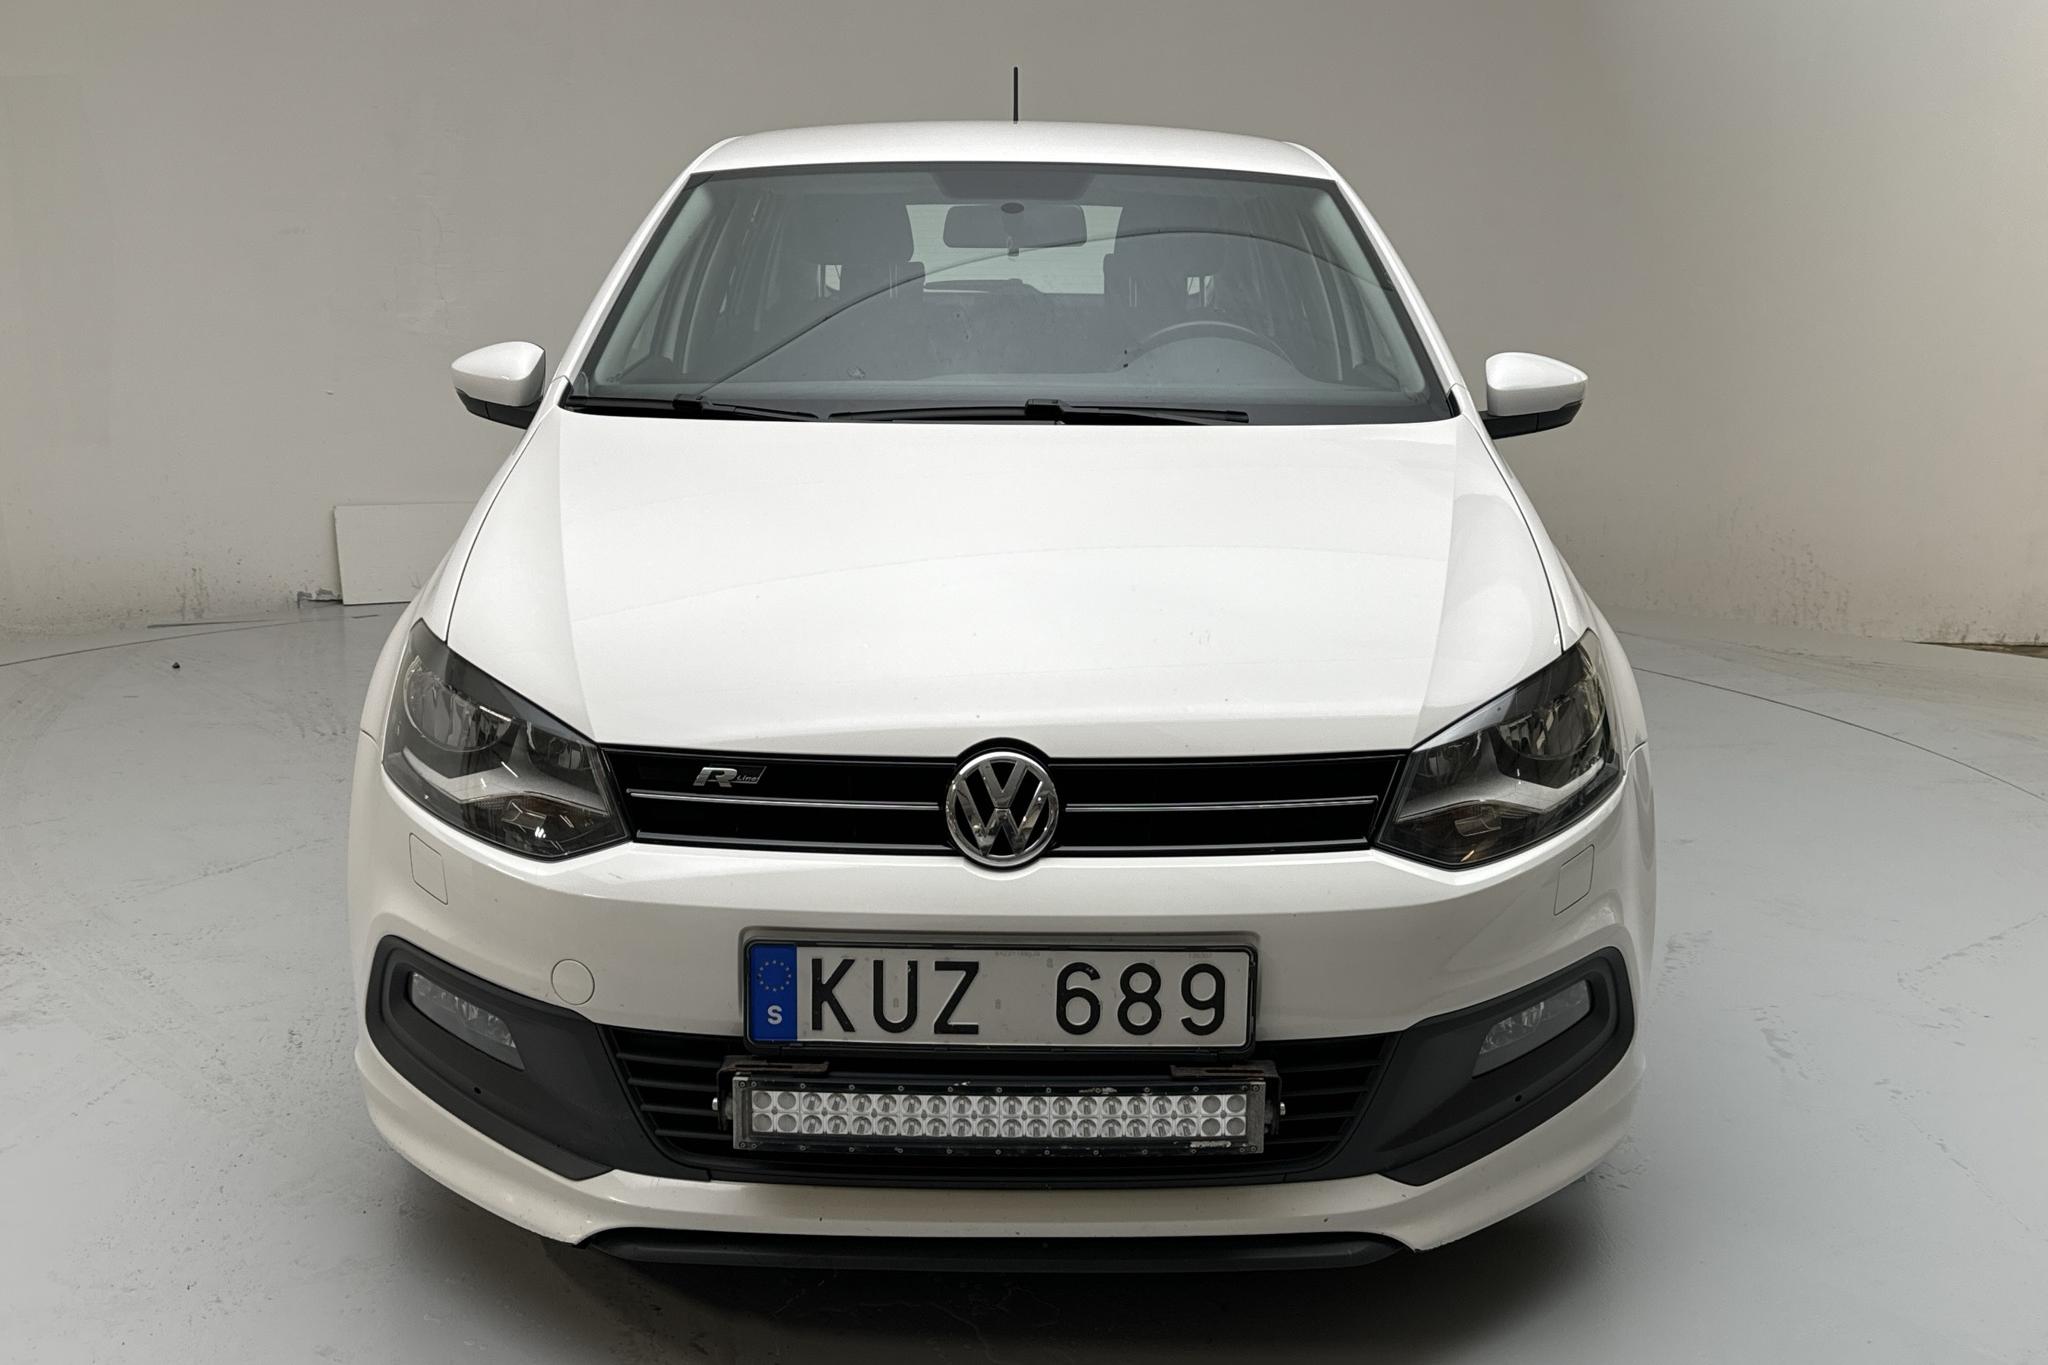 VW Polo 1.2 TSI 5dr (90hk) - 170 030 km - Manual - white - 2013